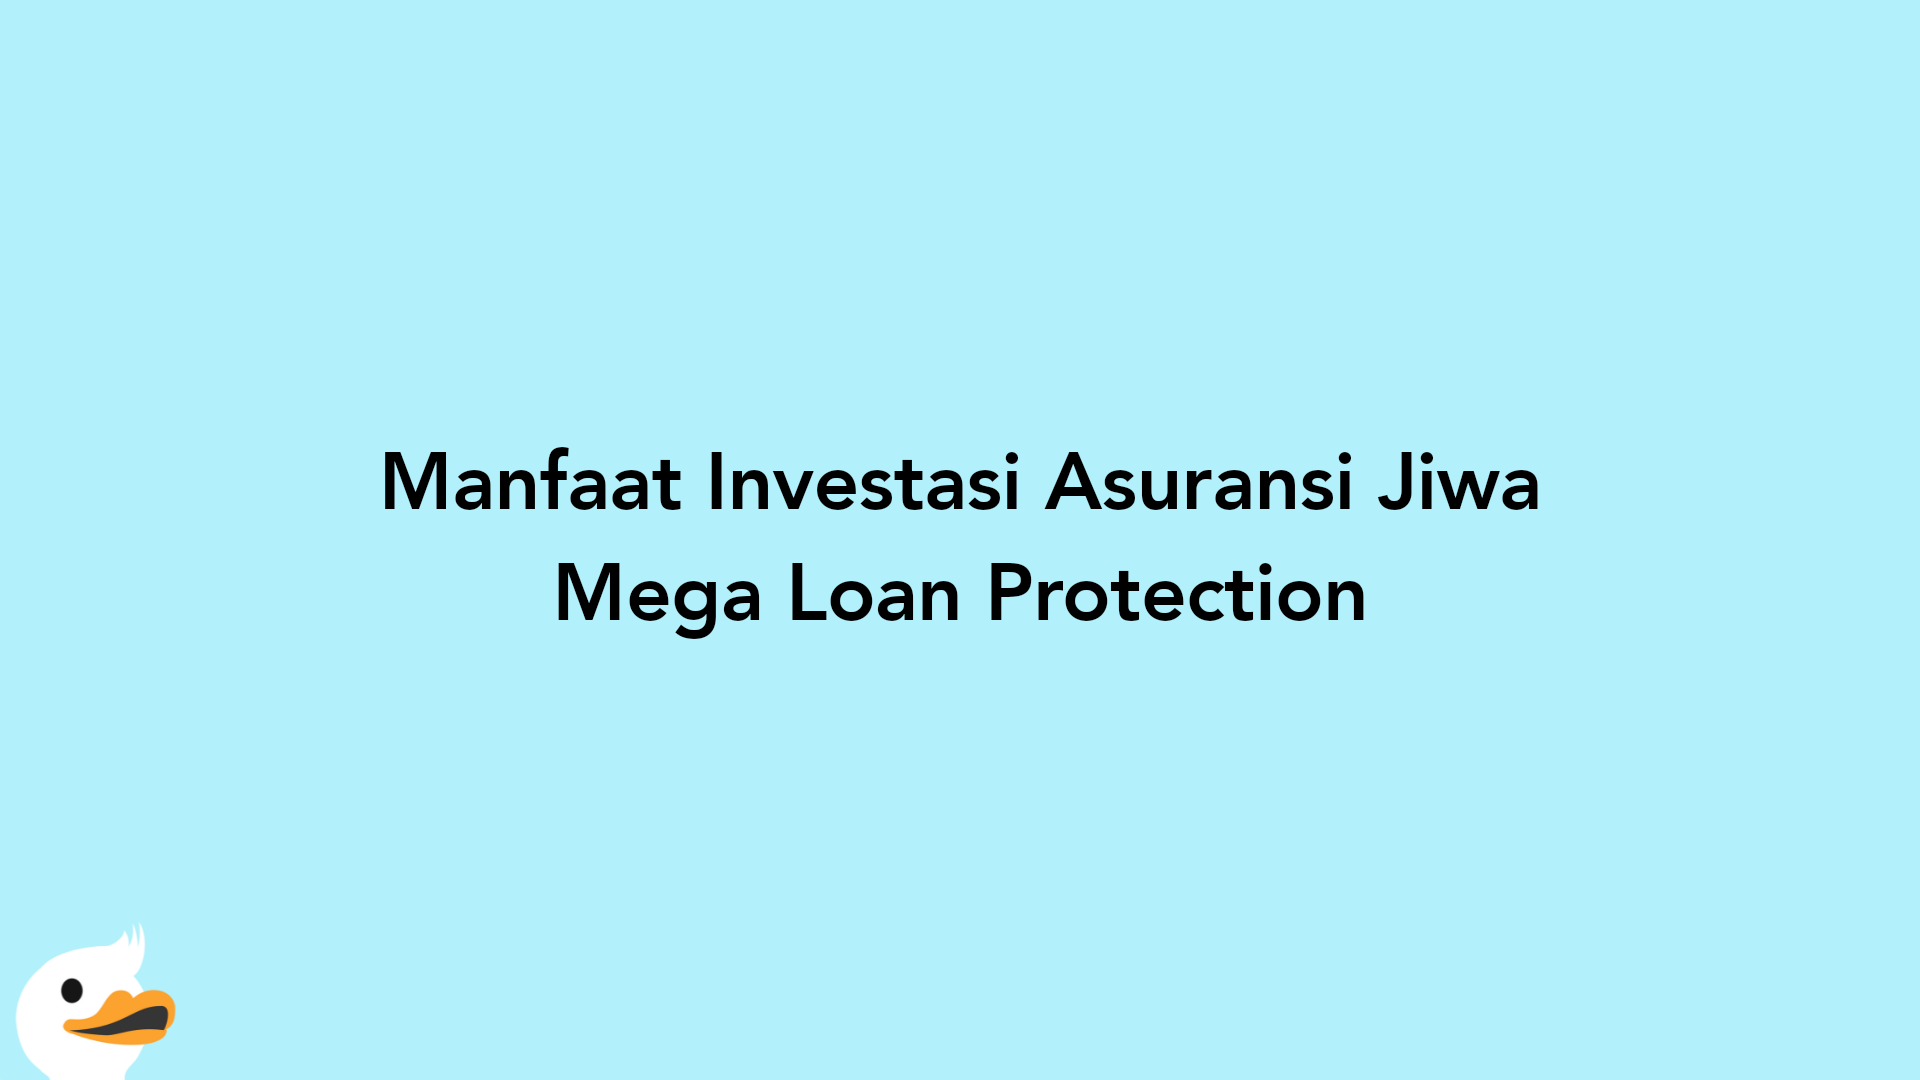 Manfaat Investasi Asuransi Jiwa Mega Loan Protection